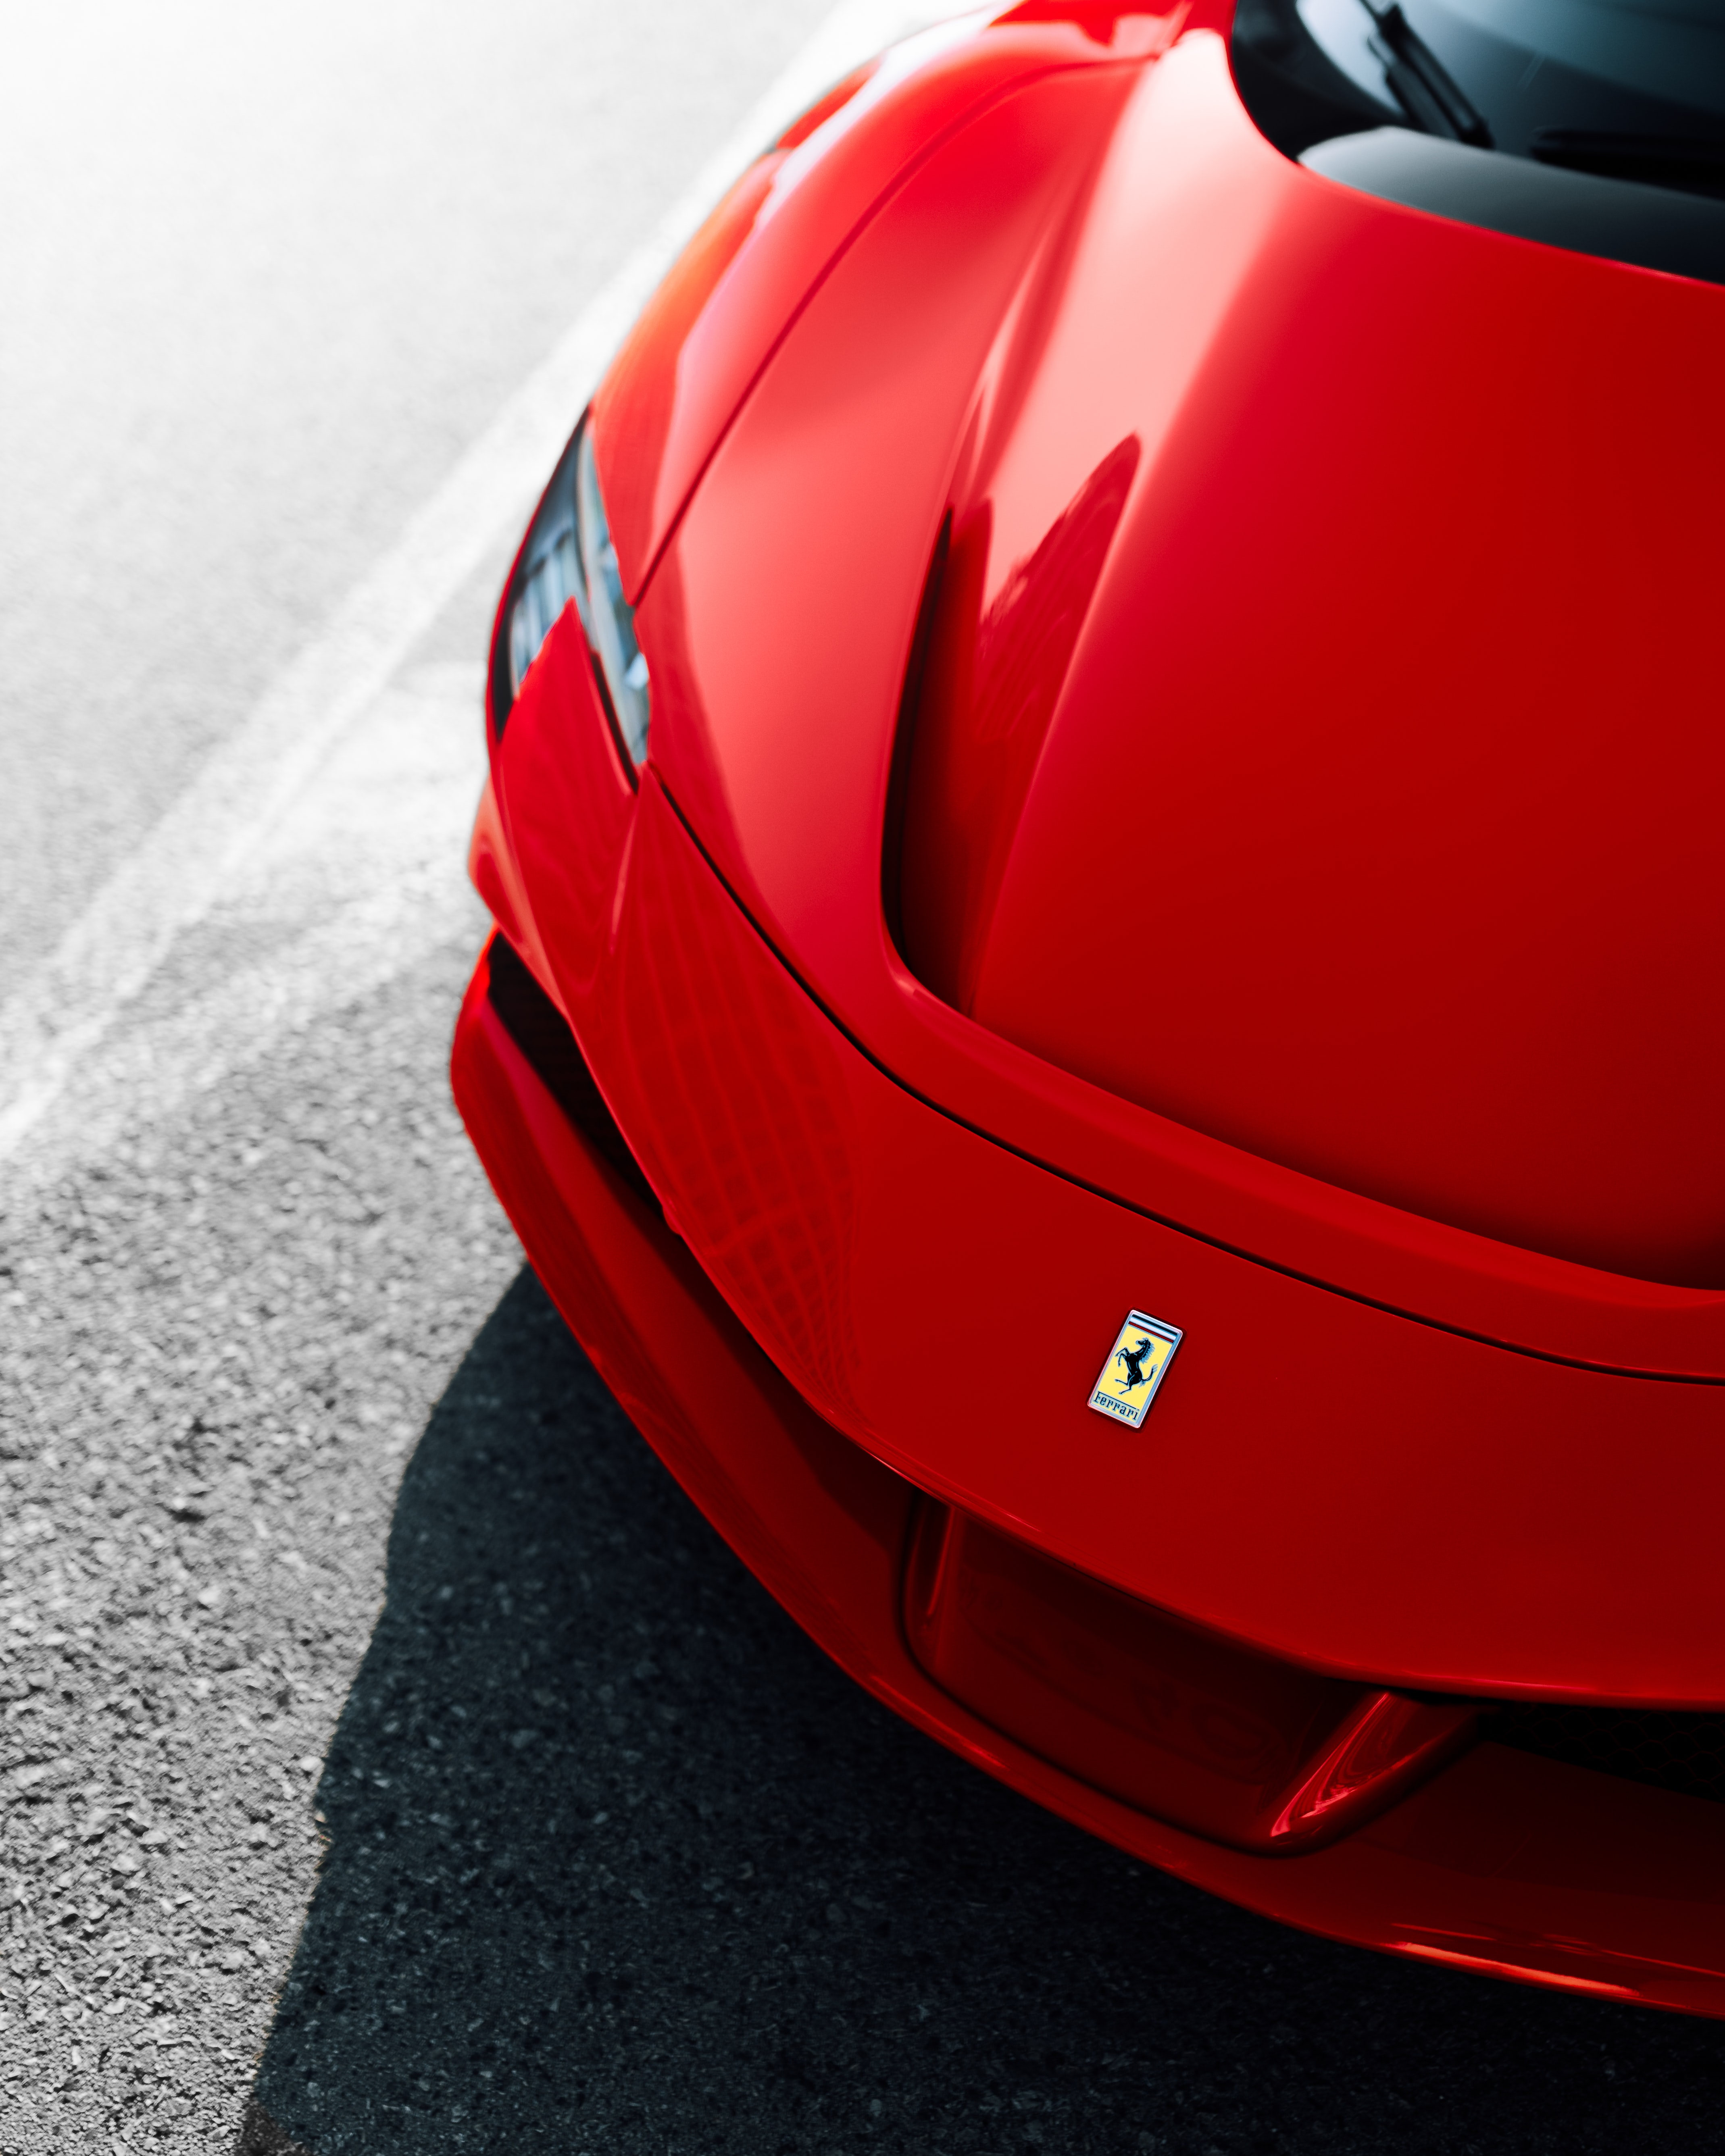 Ferrari F8 Tributo Picture by Martin Katler